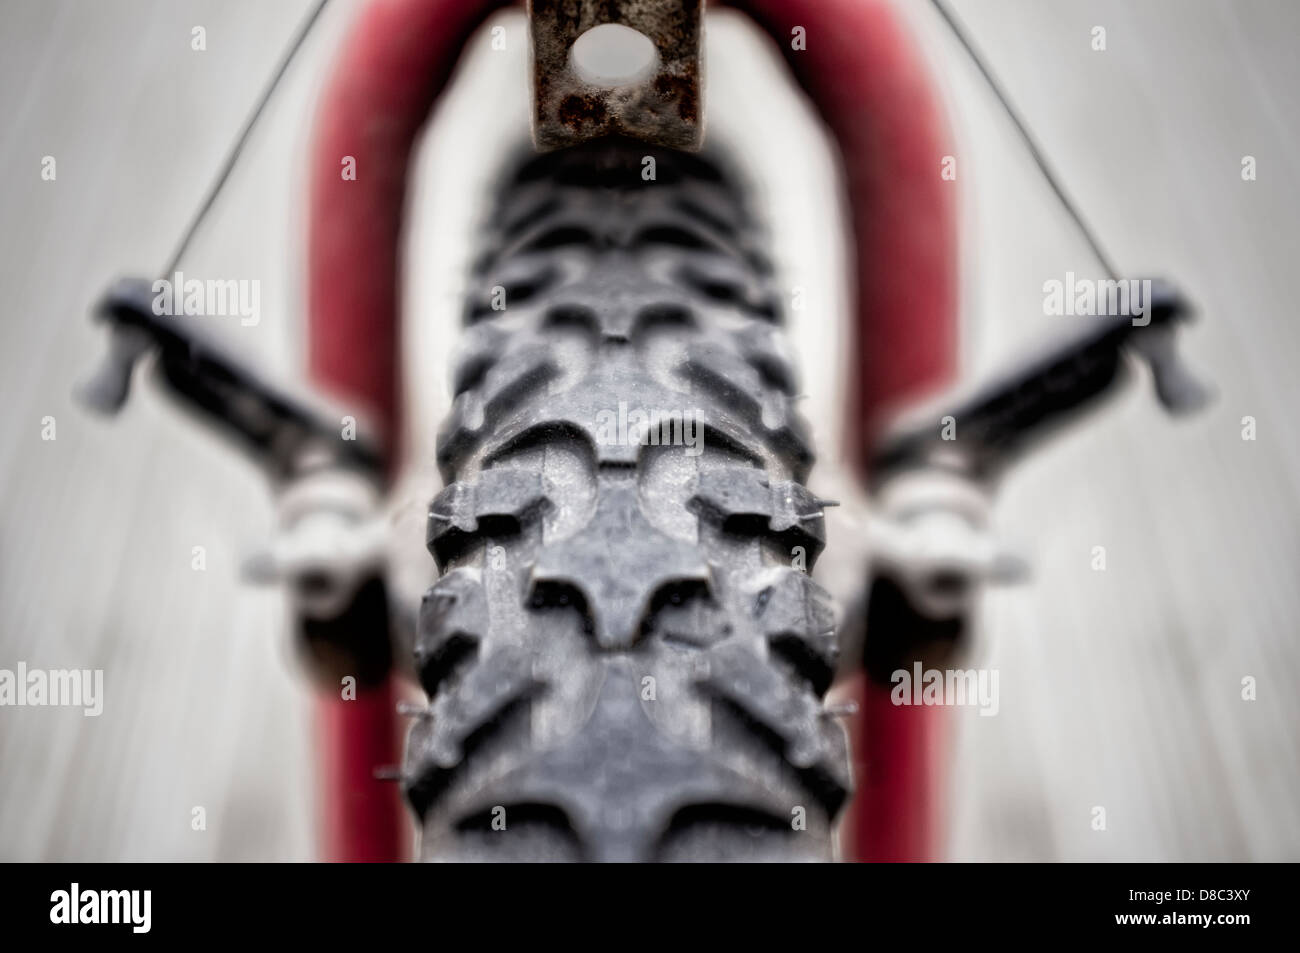 Un pneu avant pneu et mécanisme de frein de flou artistique d'un vtt montrant de la bande de roulement symétrique et de flou. Banque D'Images